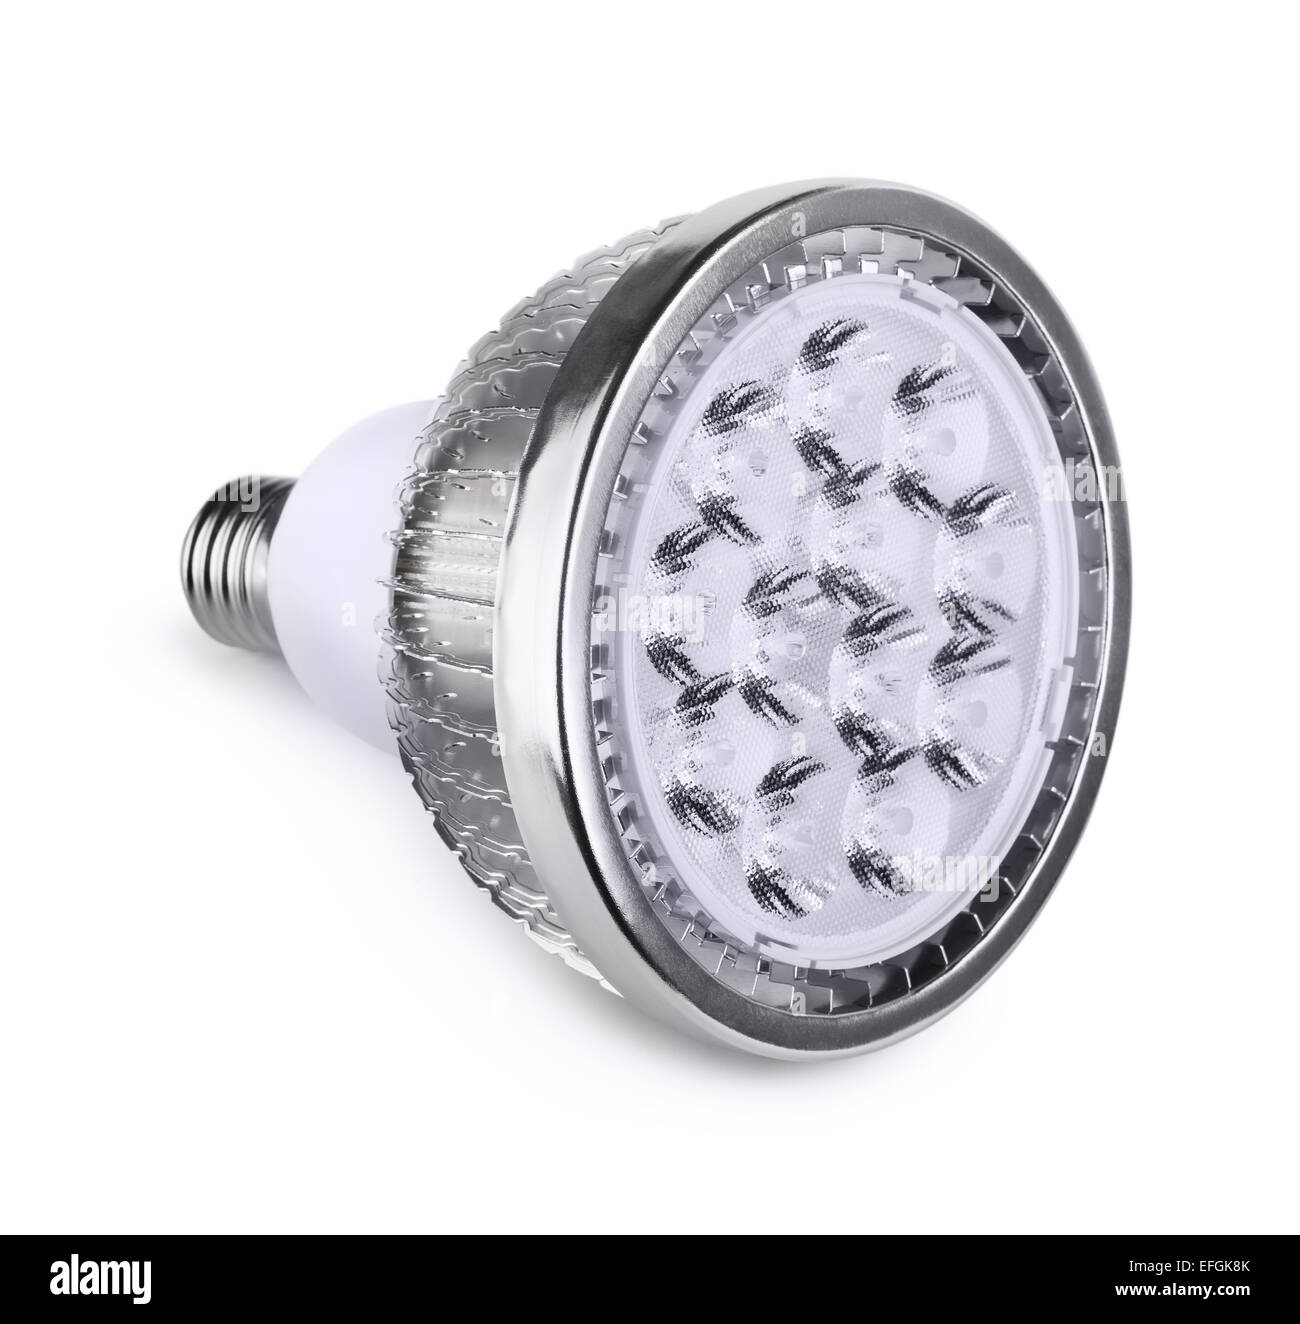 Energy saving  LED light bulb isolated on white Stock Photo